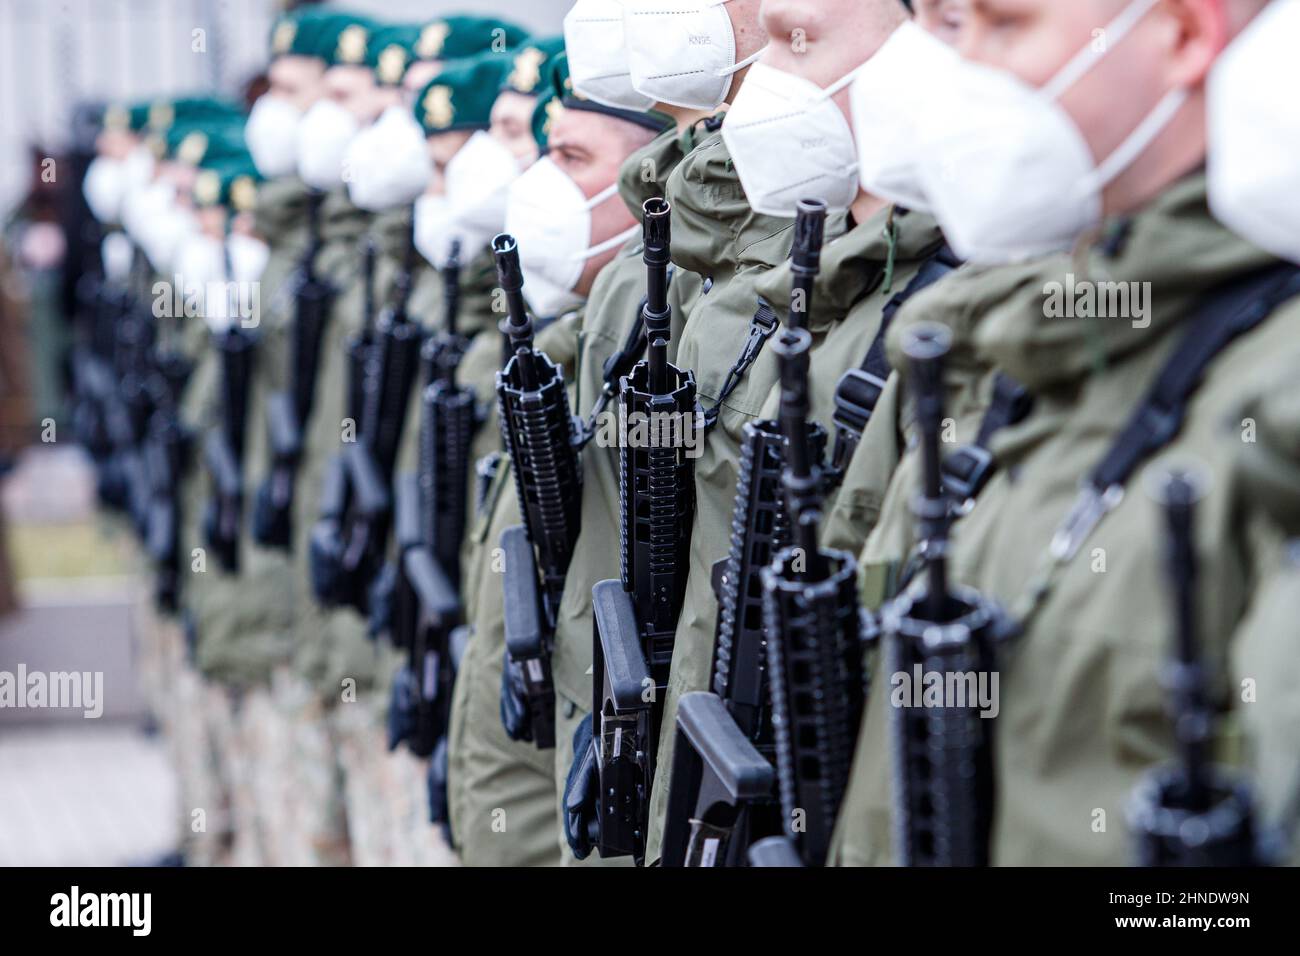 Un soldato lituano della NATO che tiene la pistola. L'Organizzazione del Trattato del Nord Atlantico, detta anche Alleanza del Nord Atlantico, è un'organizzazione militare intergovernativa Foto Stock